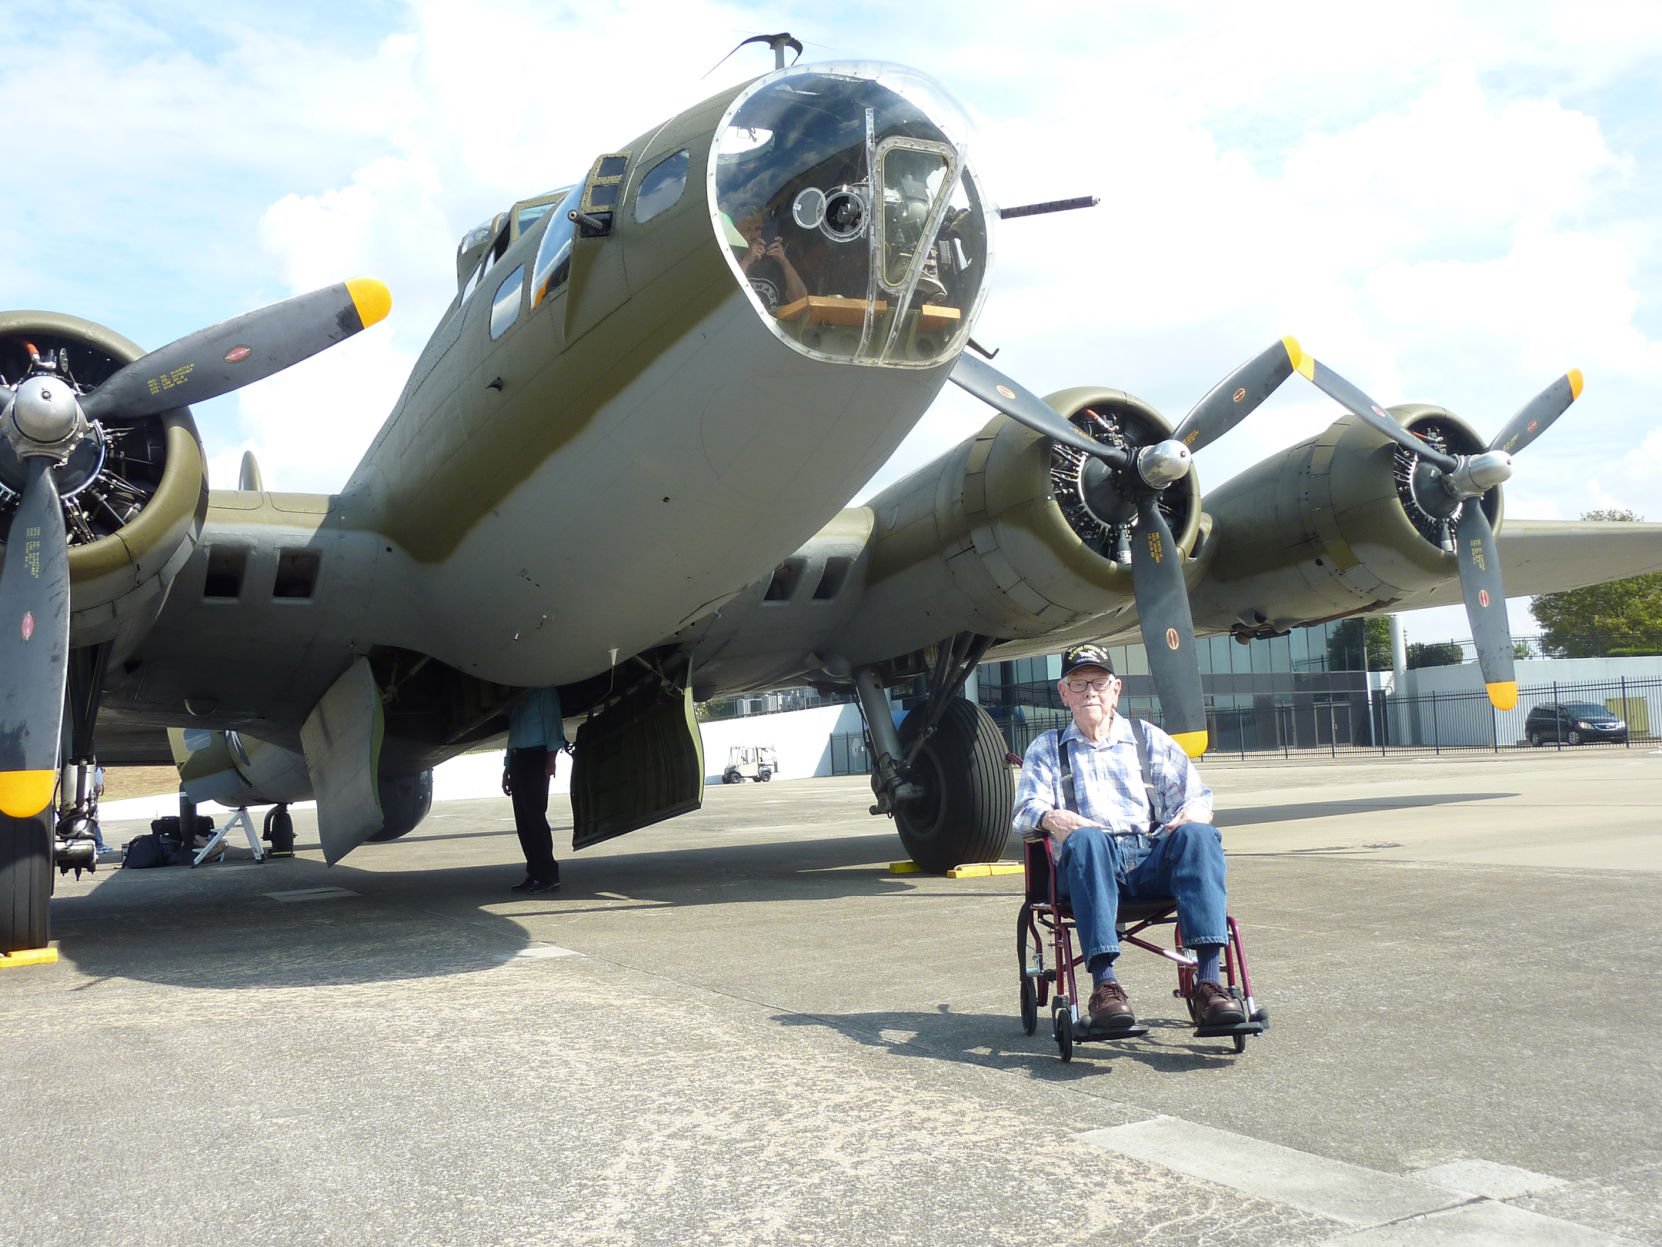 Local former B-17 bomber pilot reminisces about World War II News state-journal